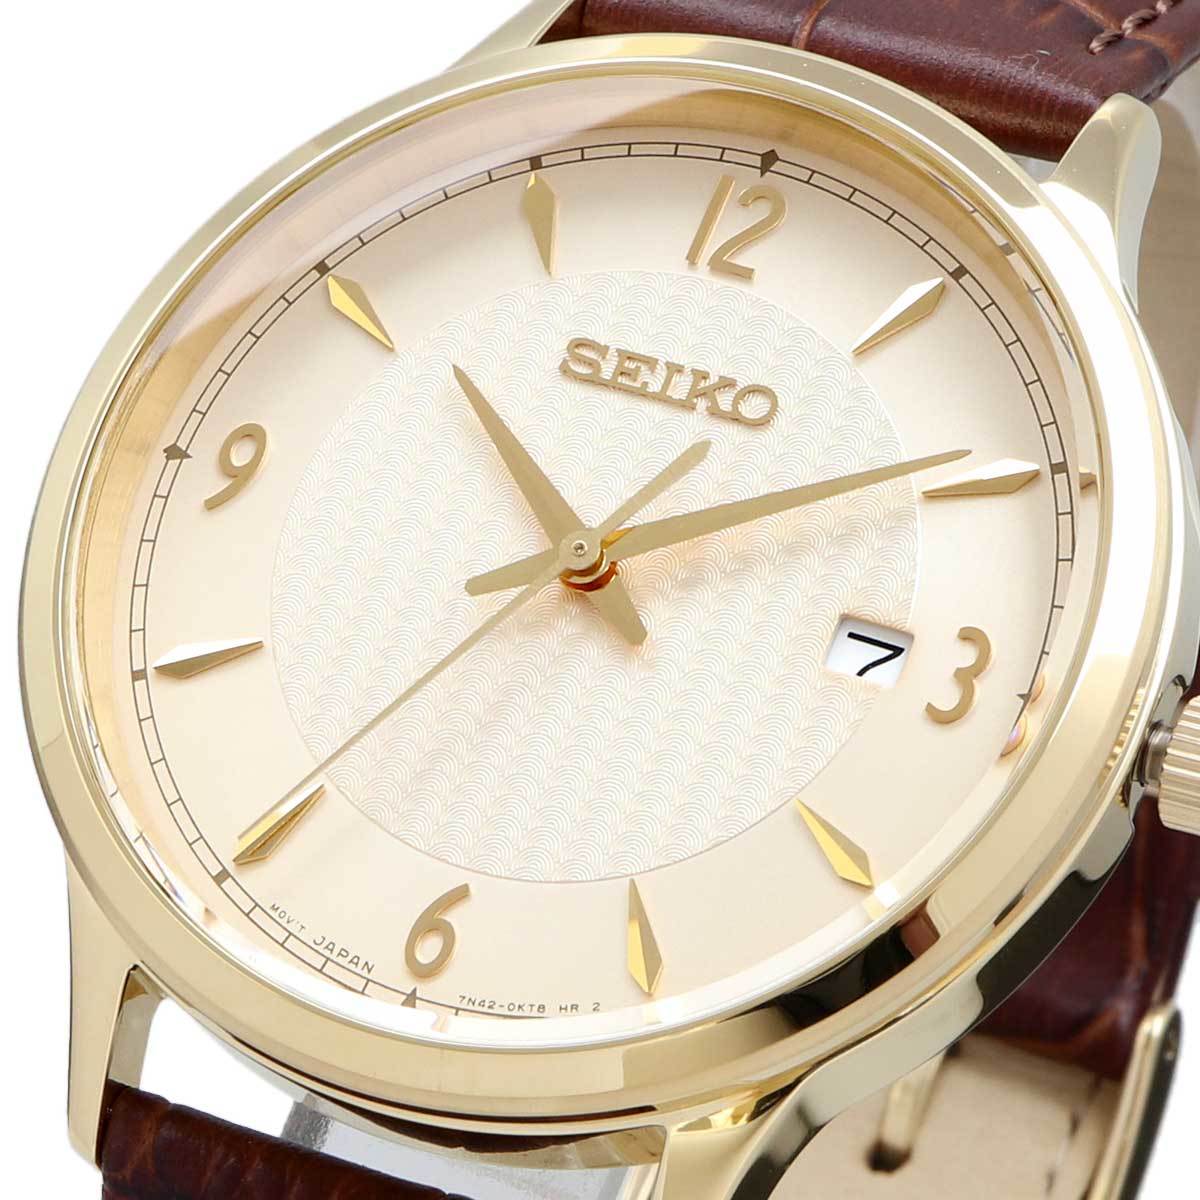 SEIKO セイコー 腕時計 メンズ 海外モデル クォーツ シンプル ビジネス カジュアル SGEH86P1